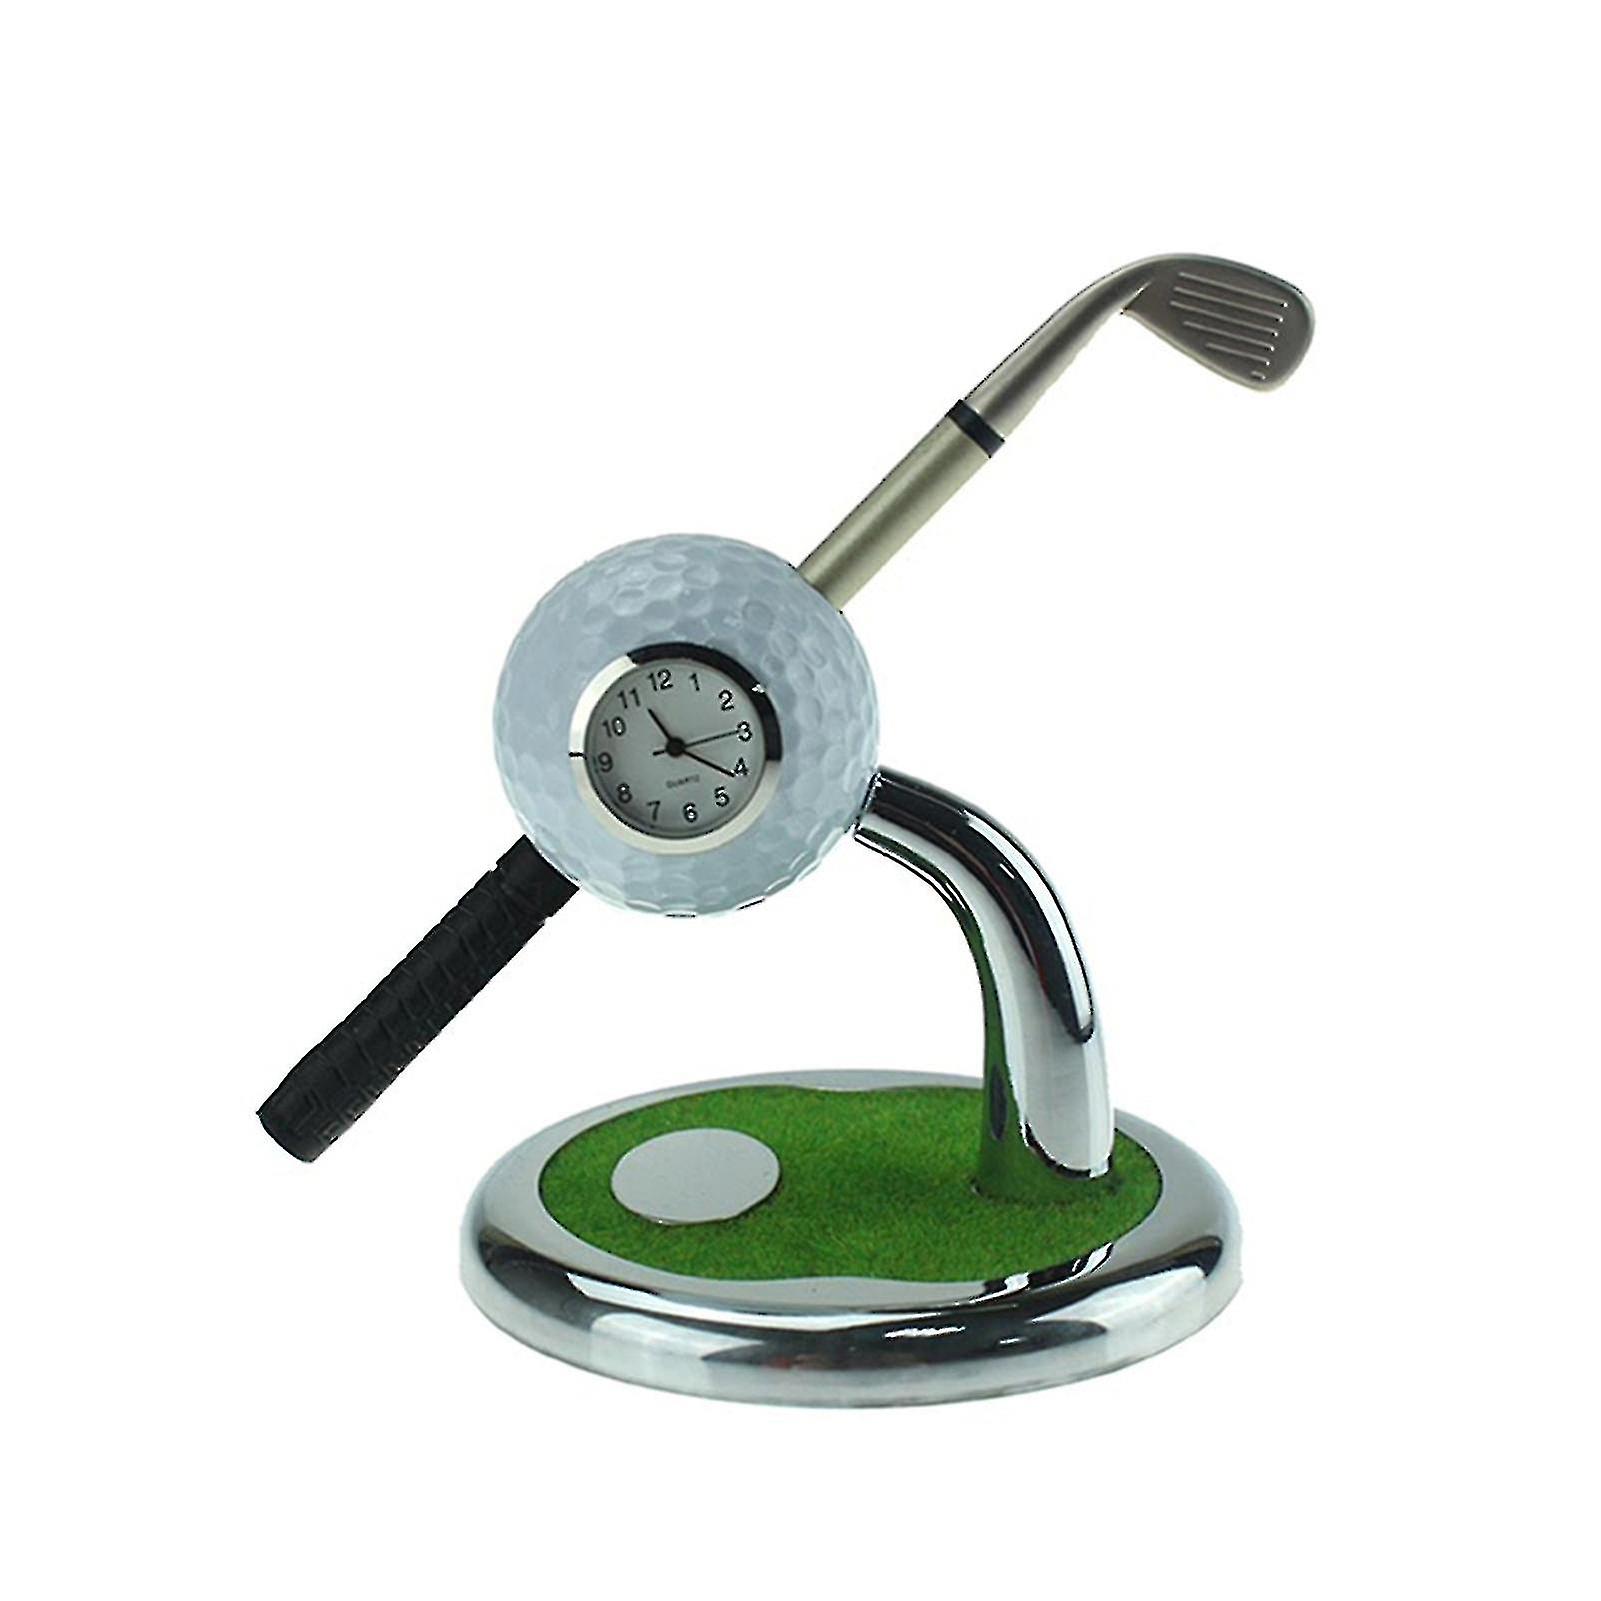 clube de golfe caneta com uma bola e um relógio